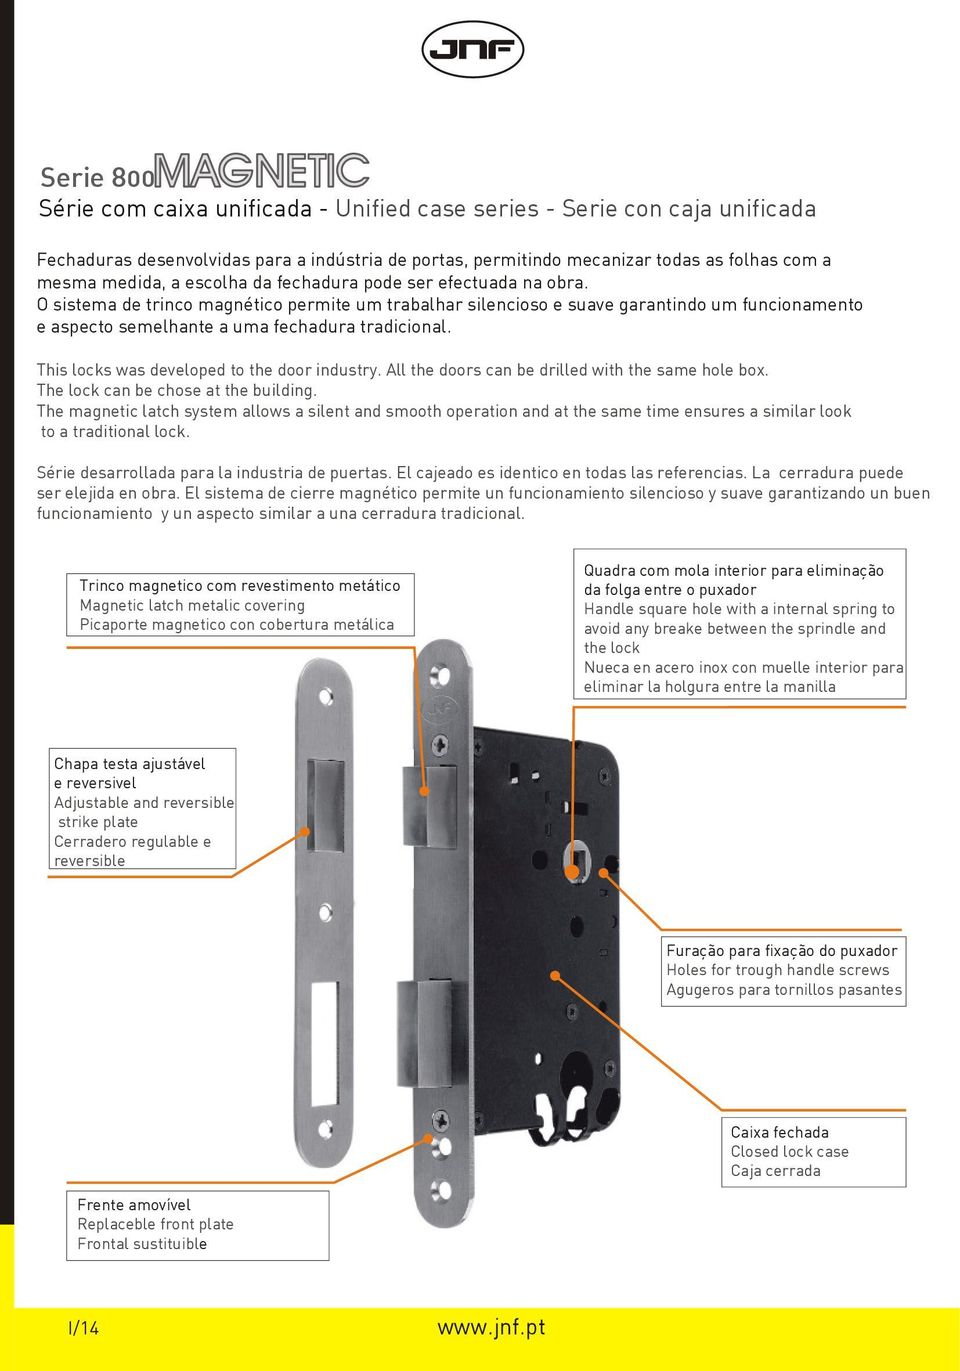 O sistema de trinco magnético permite um trabalhar silencioso e suave garantindo um funcionamento e aspecto semelhante a uma fechadura tradicional. This locks was developed to the door industry.